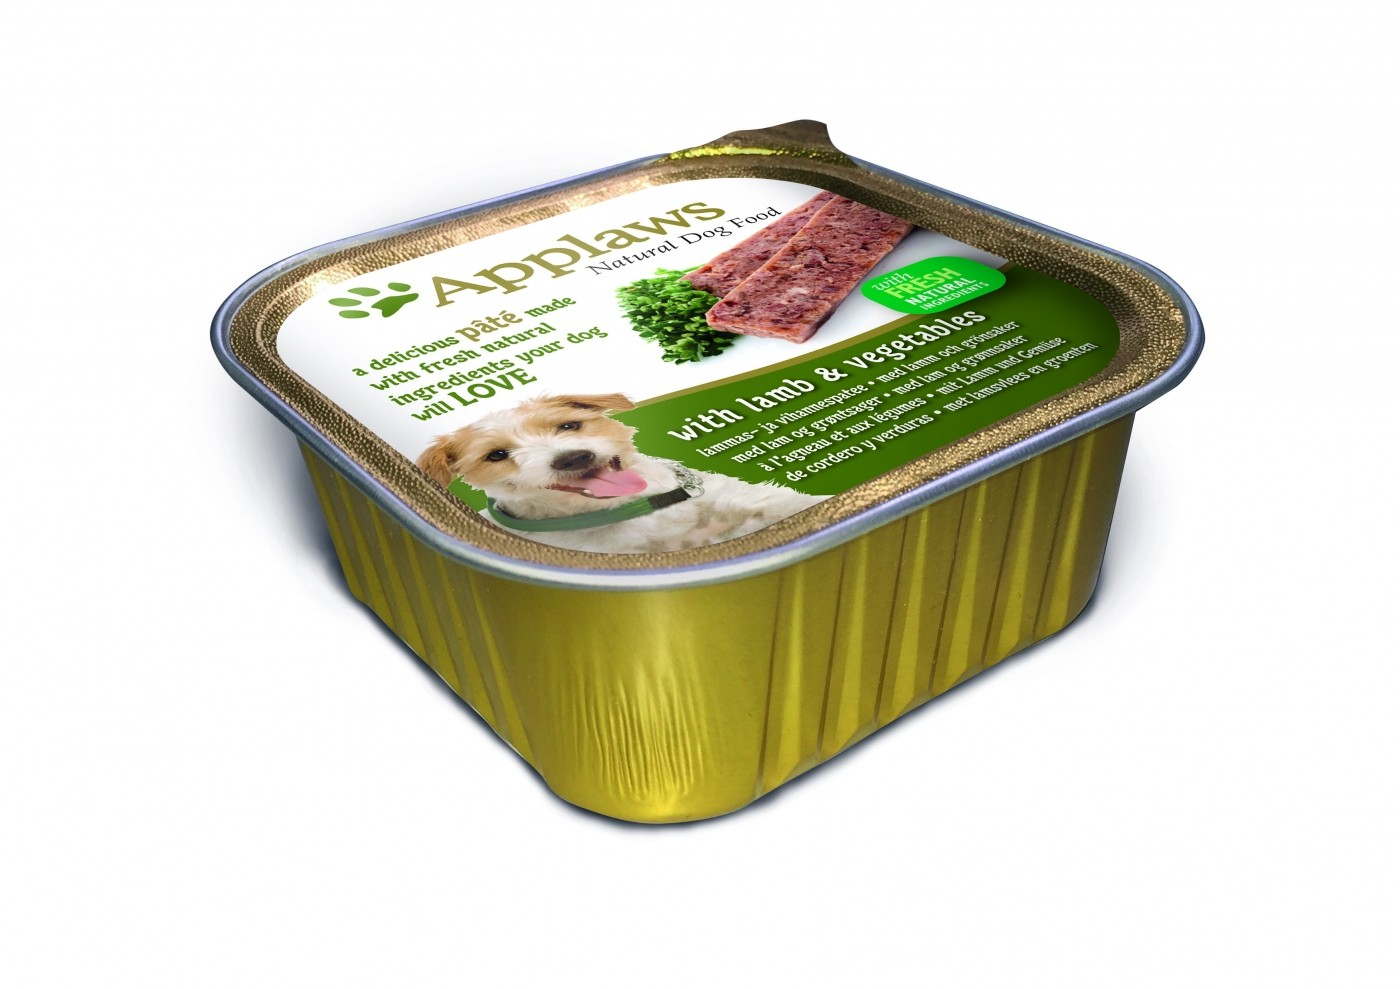 APPLAWS Paté natural para perros adultos 150g - 5 sabores